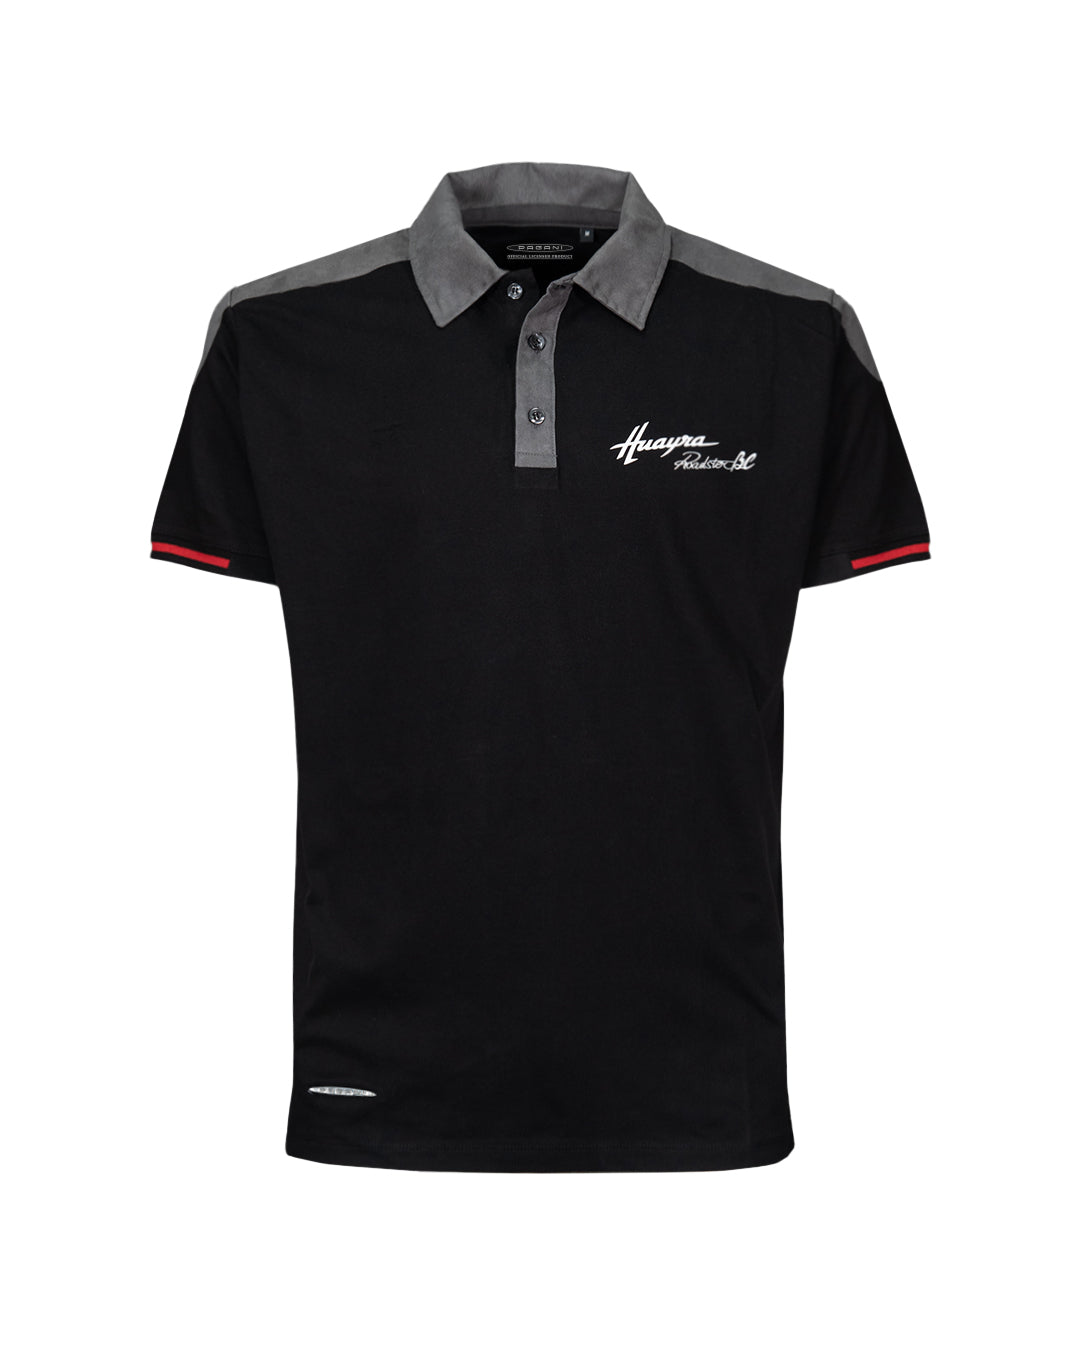 Pagani “Huayra Roadster BC” Alcantara Polo Shirt Man Black